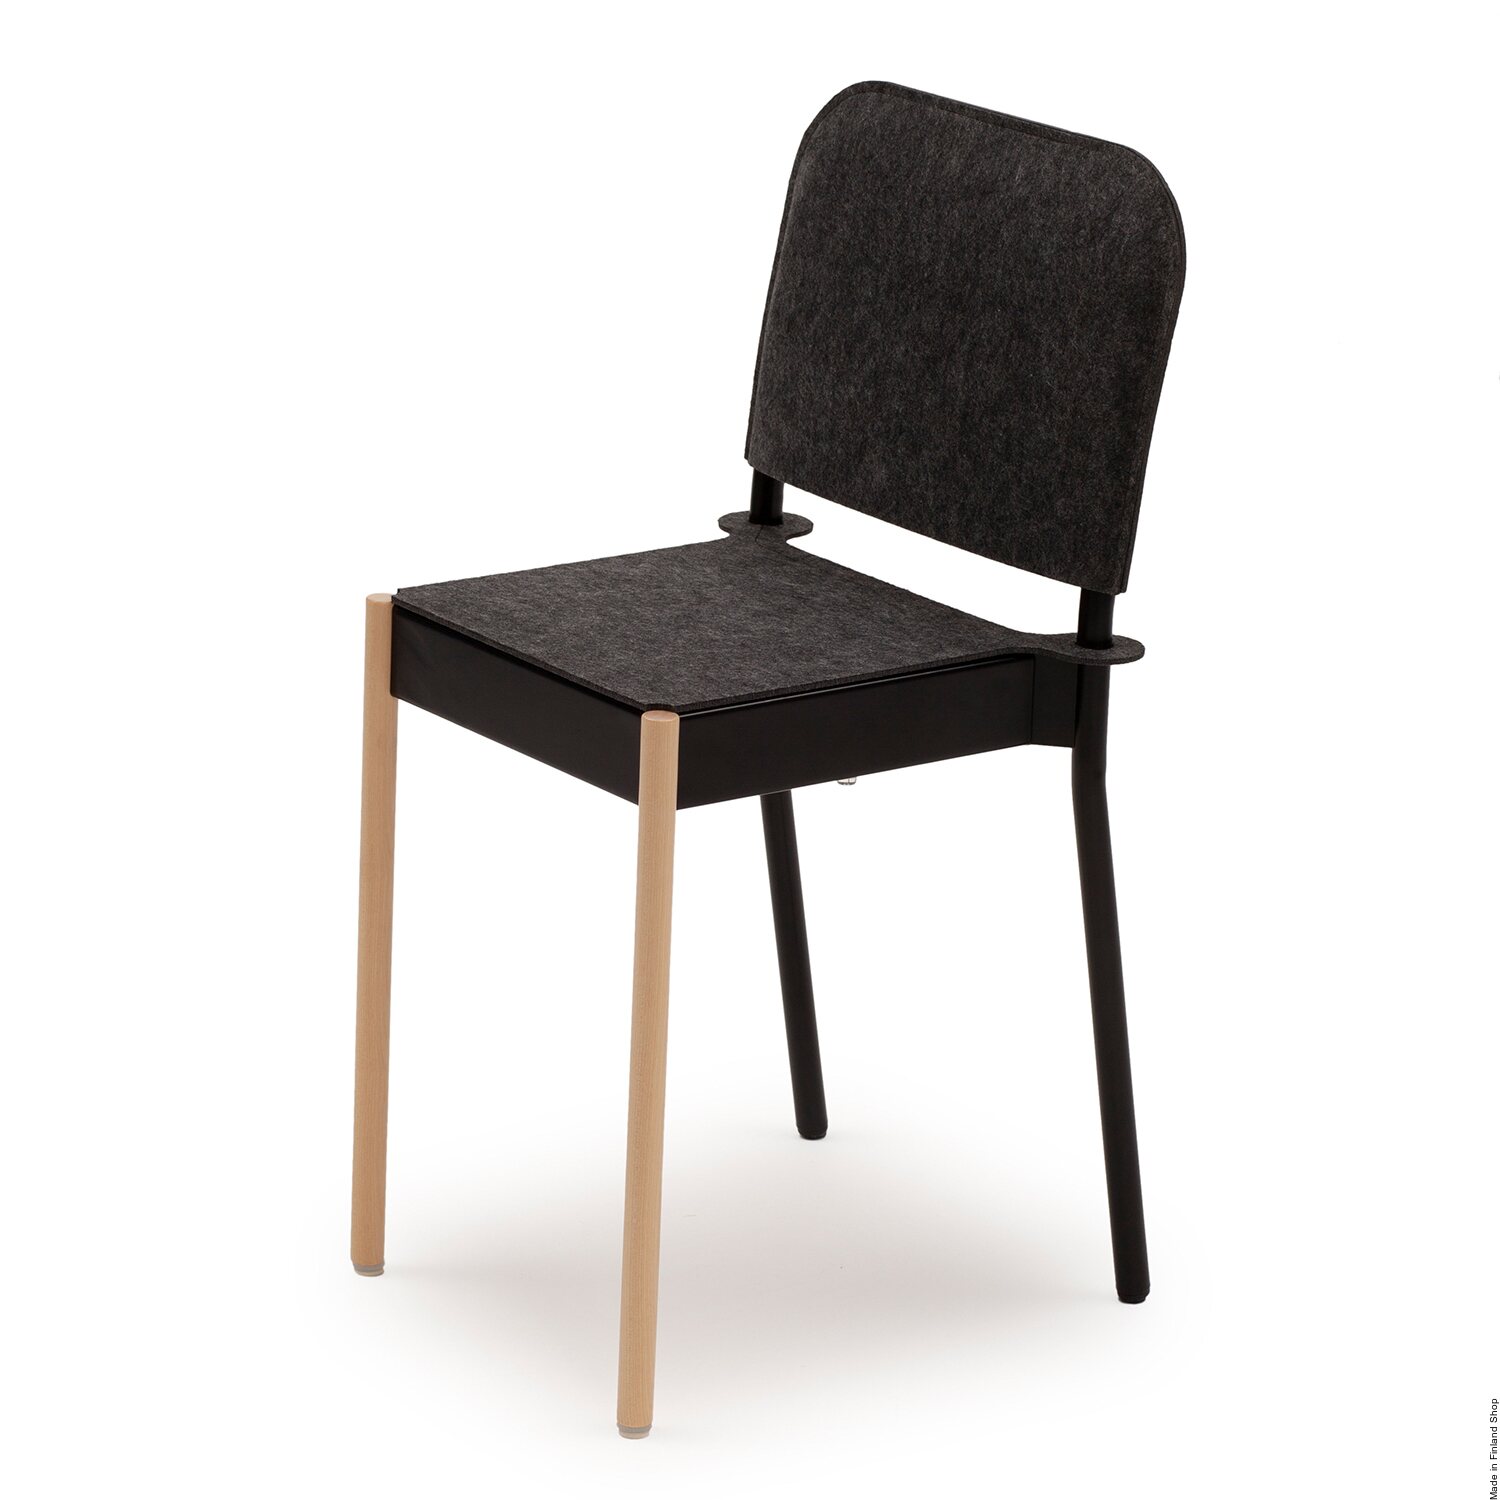 Vivero Chaise La Table avec pieds avant en bois et assise en feutre